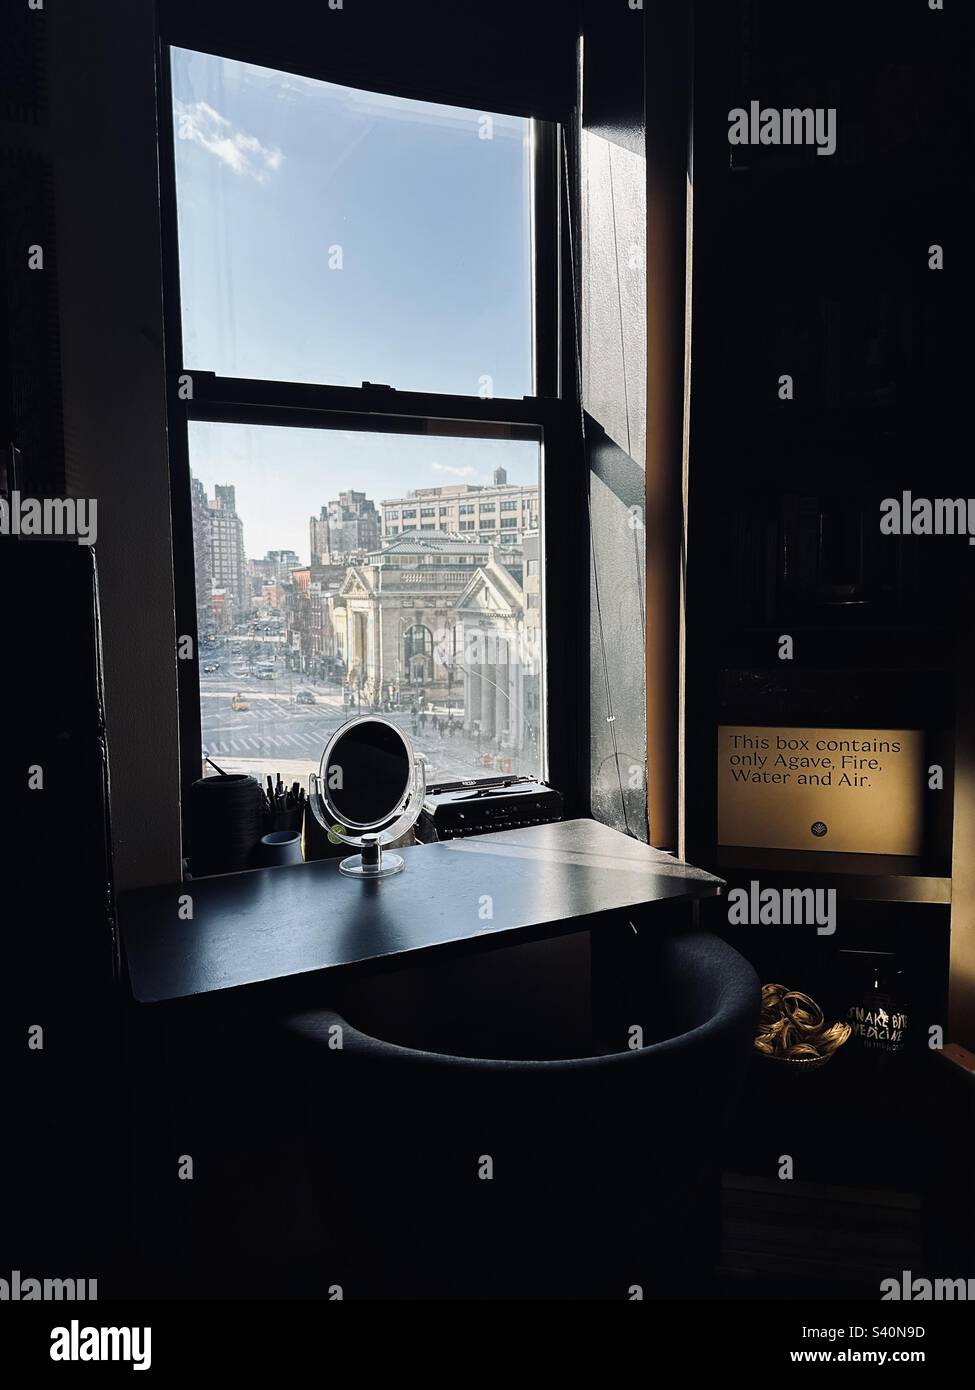 Vista dalla finestra di un appartamento che guarda alla 7th Avenue, Manhattan, New York. Uno specchietto davanti al vetro. Una scatola che dice "questa scatola contiene solo Agave, fuoco, acqua e aria". Per un set di degustazione Mescal Foto Stock